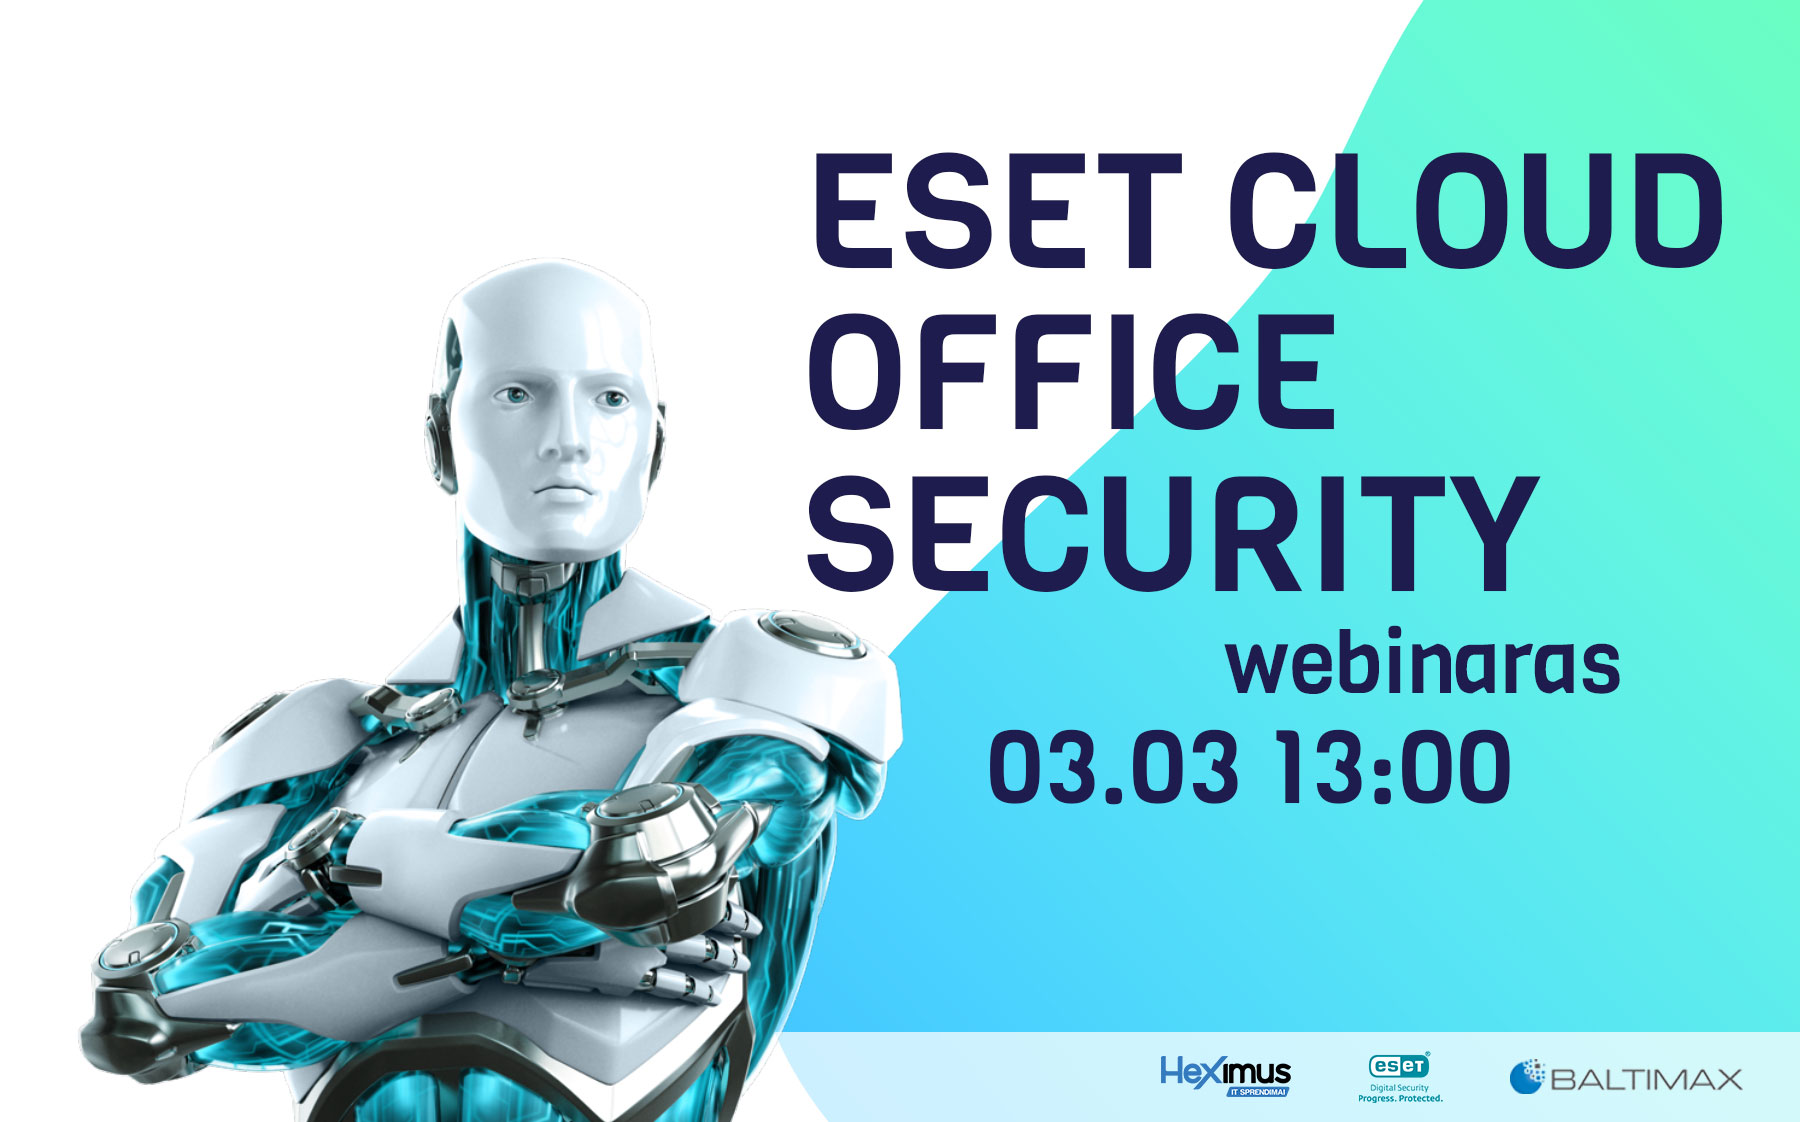 ESET Cloud Office Security vebinaras